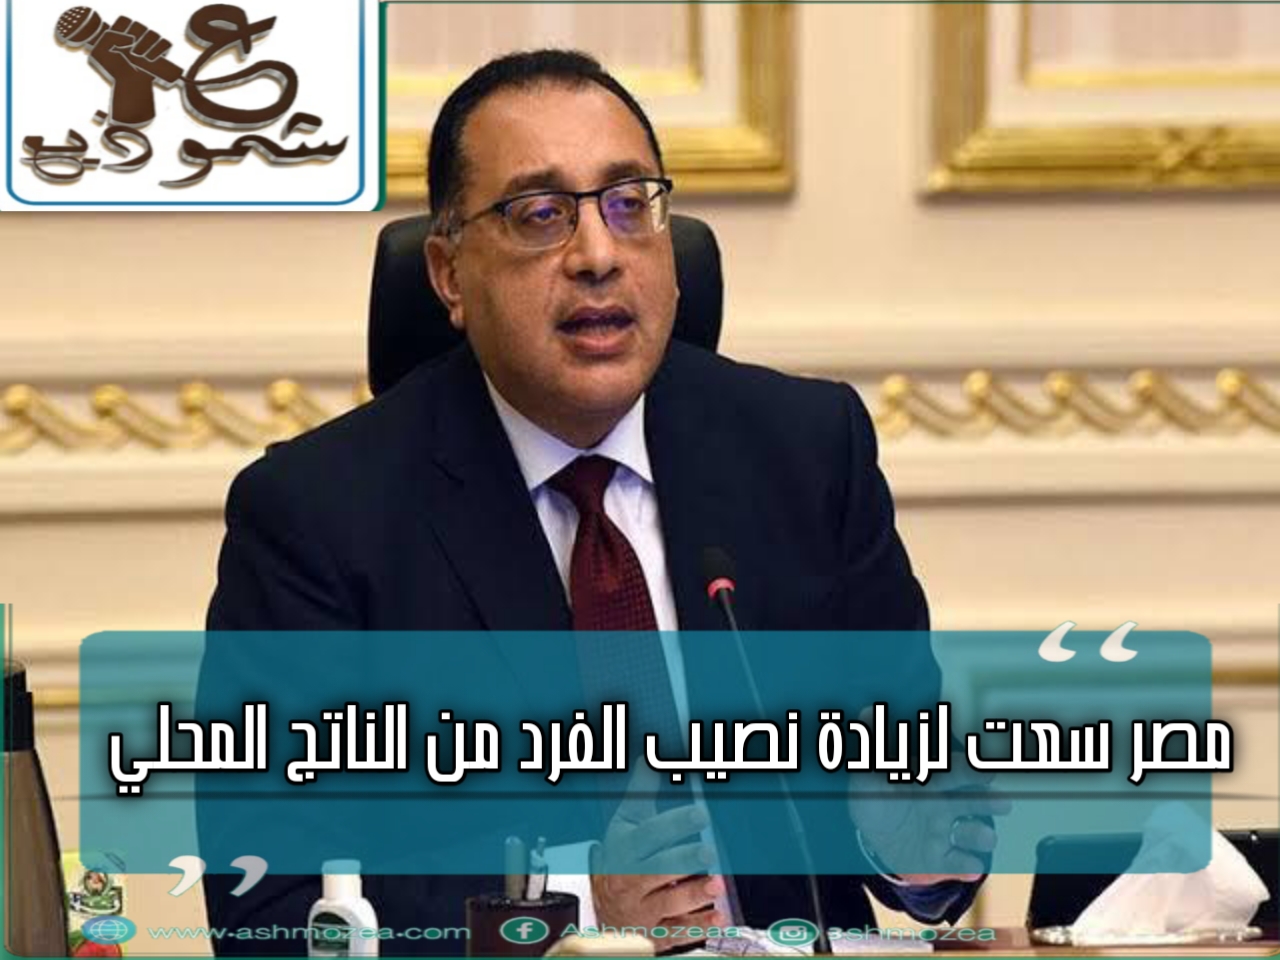 مدبولى: مصر سعت لزيادة نصيب الفرد من الناتج المحلى